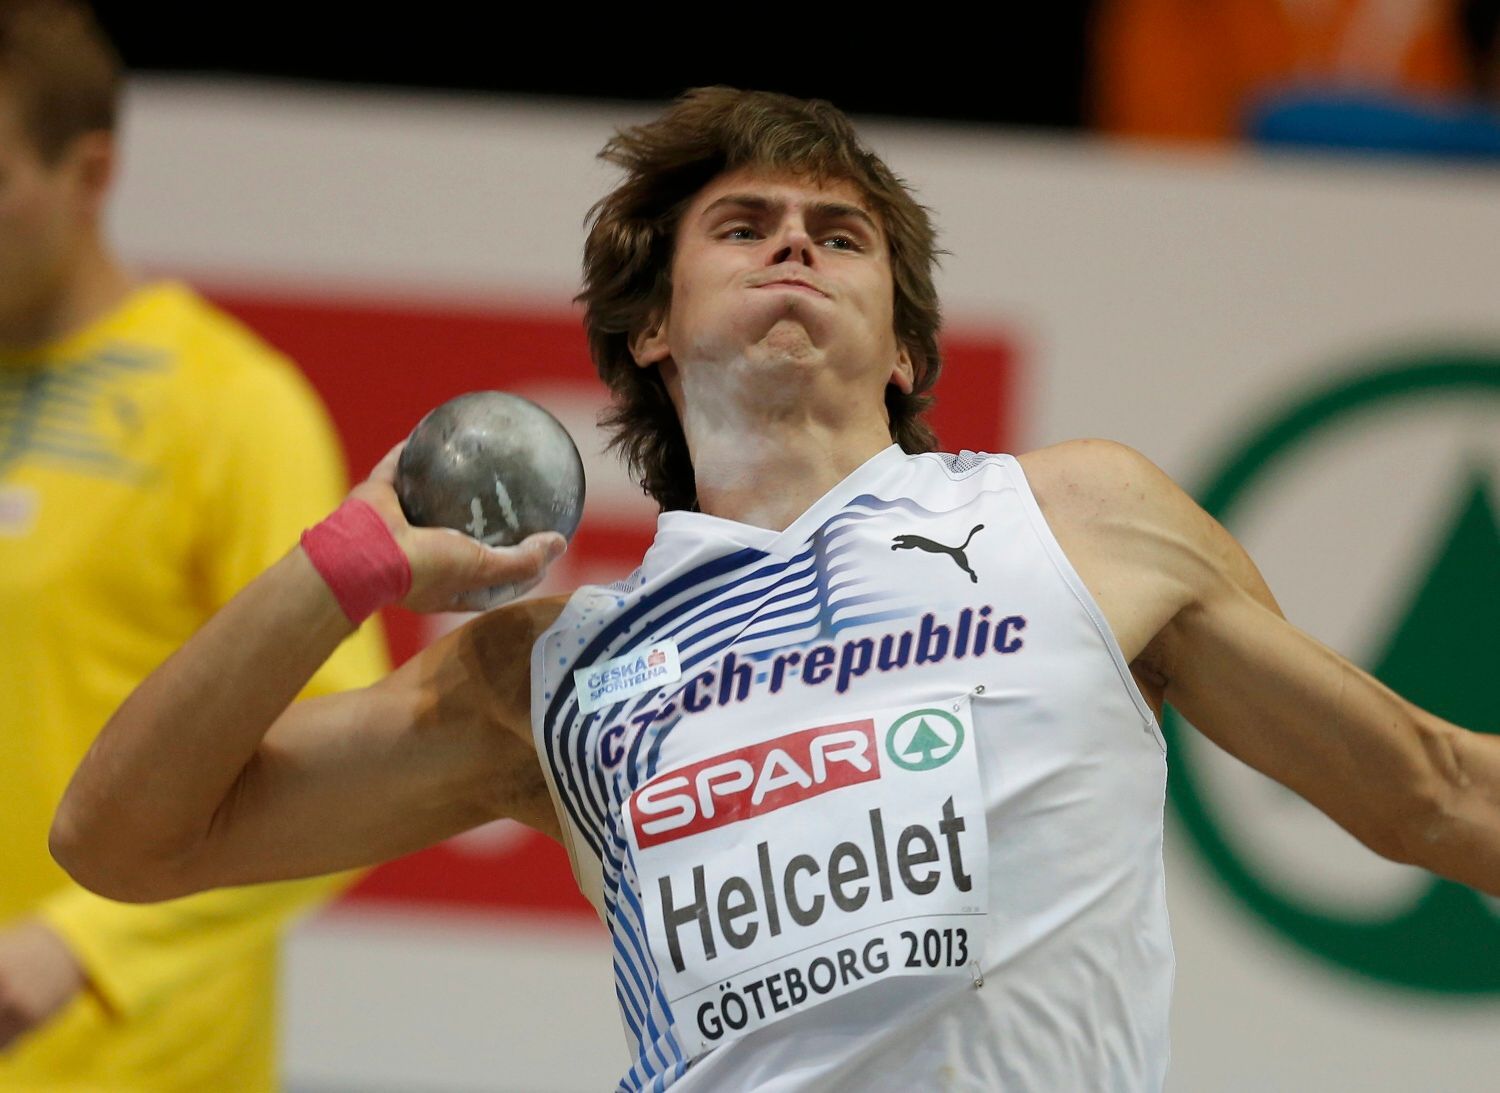 ME v halové atletice 2013, sedmiboj, vrh koulí: Adam Helcelet